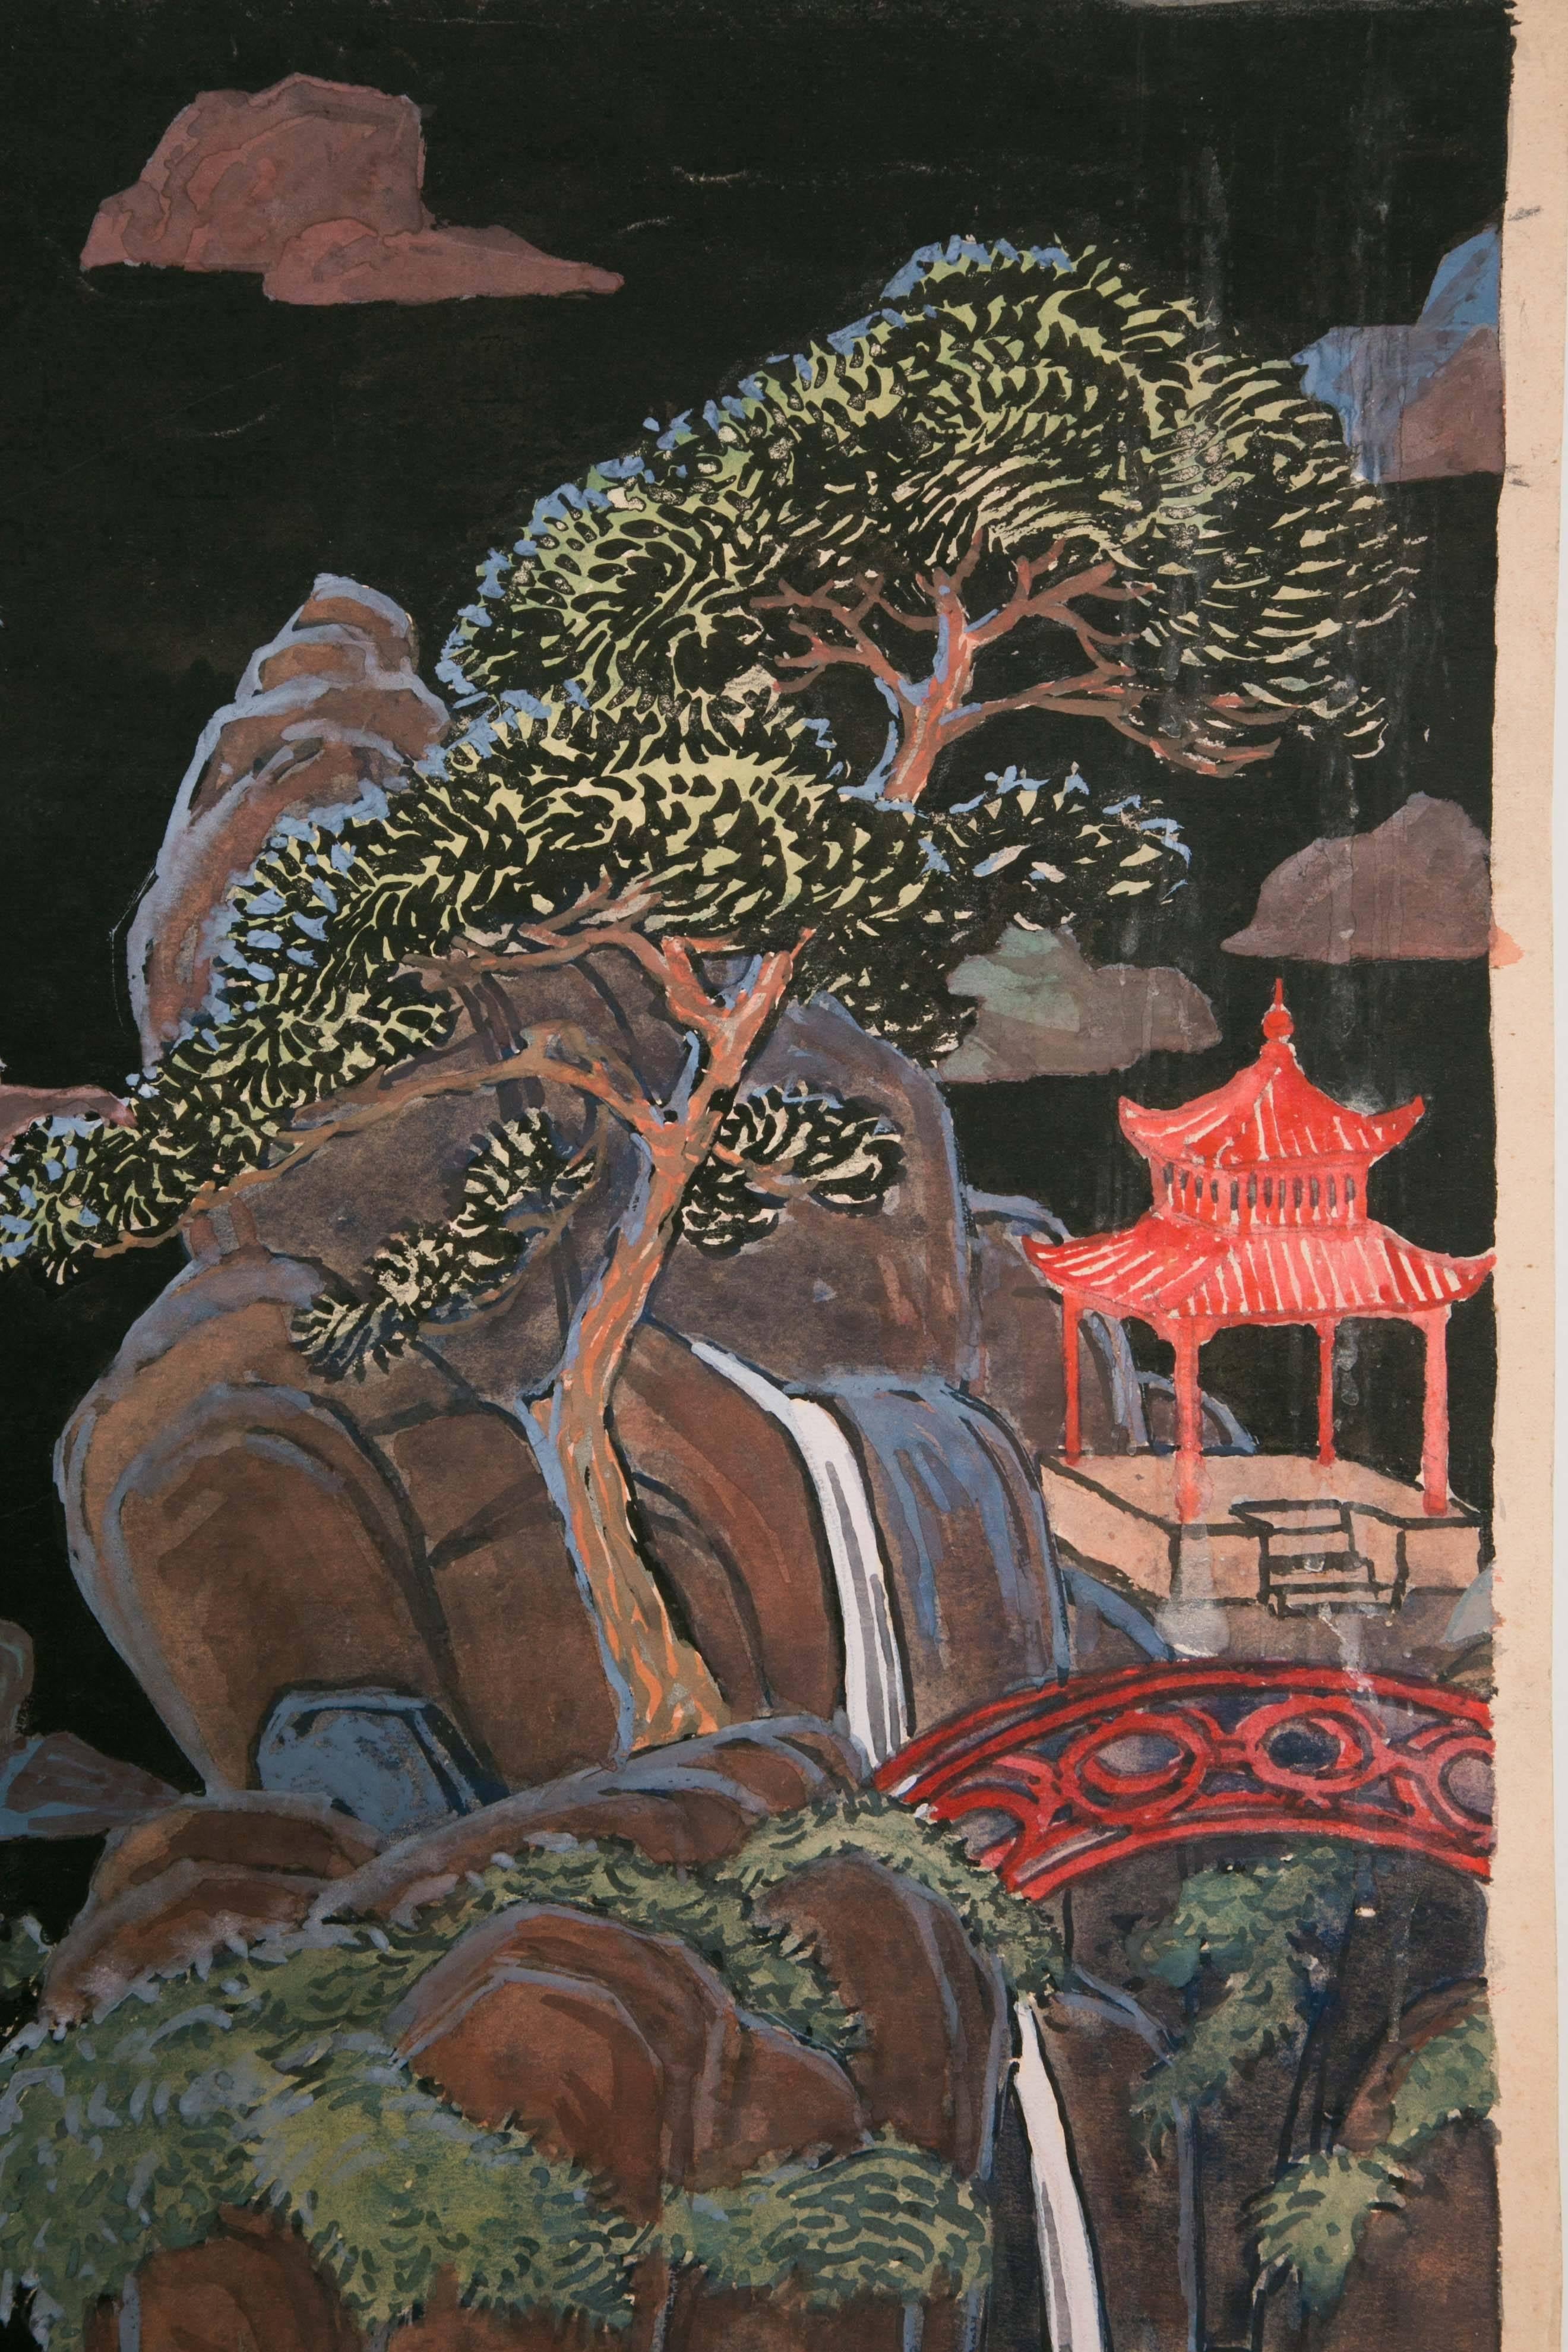 Tapetendesign. Aquarell auf Papier, das eine chinesische Landschaft darstellt, Frankreich, Art déco, 1920er Jahre.
Abmessung: 49,5 x 49,5 cm ohne Rahmen.
Ein weiteres Tapetendesign ist mit einem passenden Muster erhältlich, das chinesische Masken